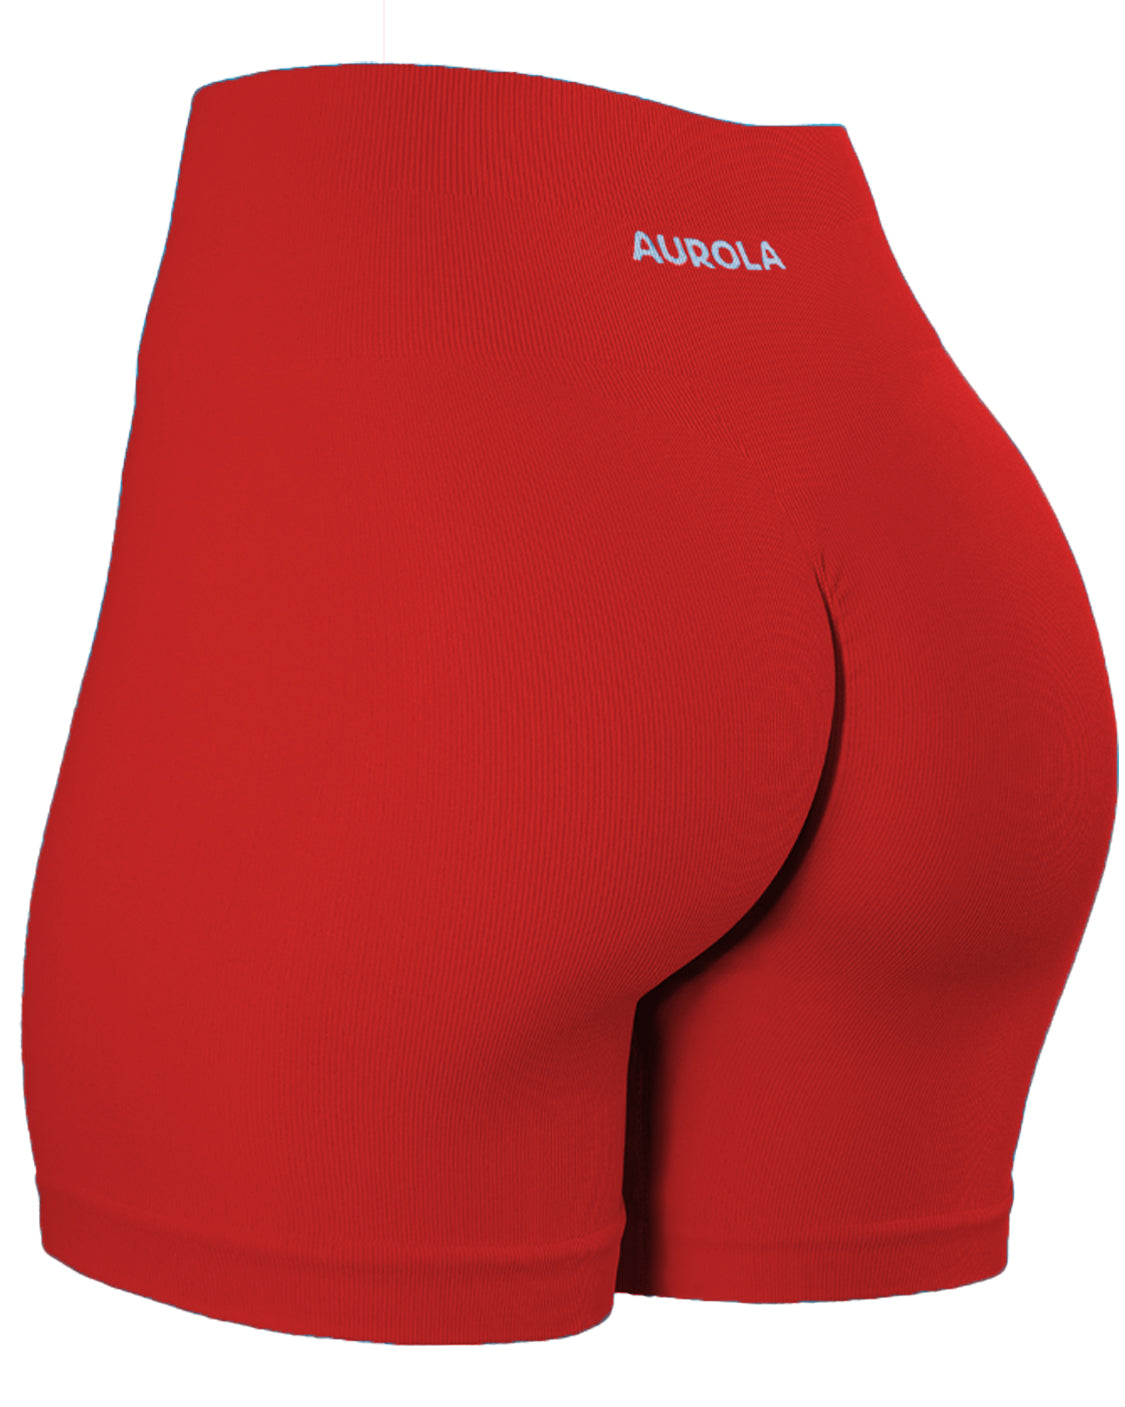 AUROLA Power Shorts - Flame Red / XS